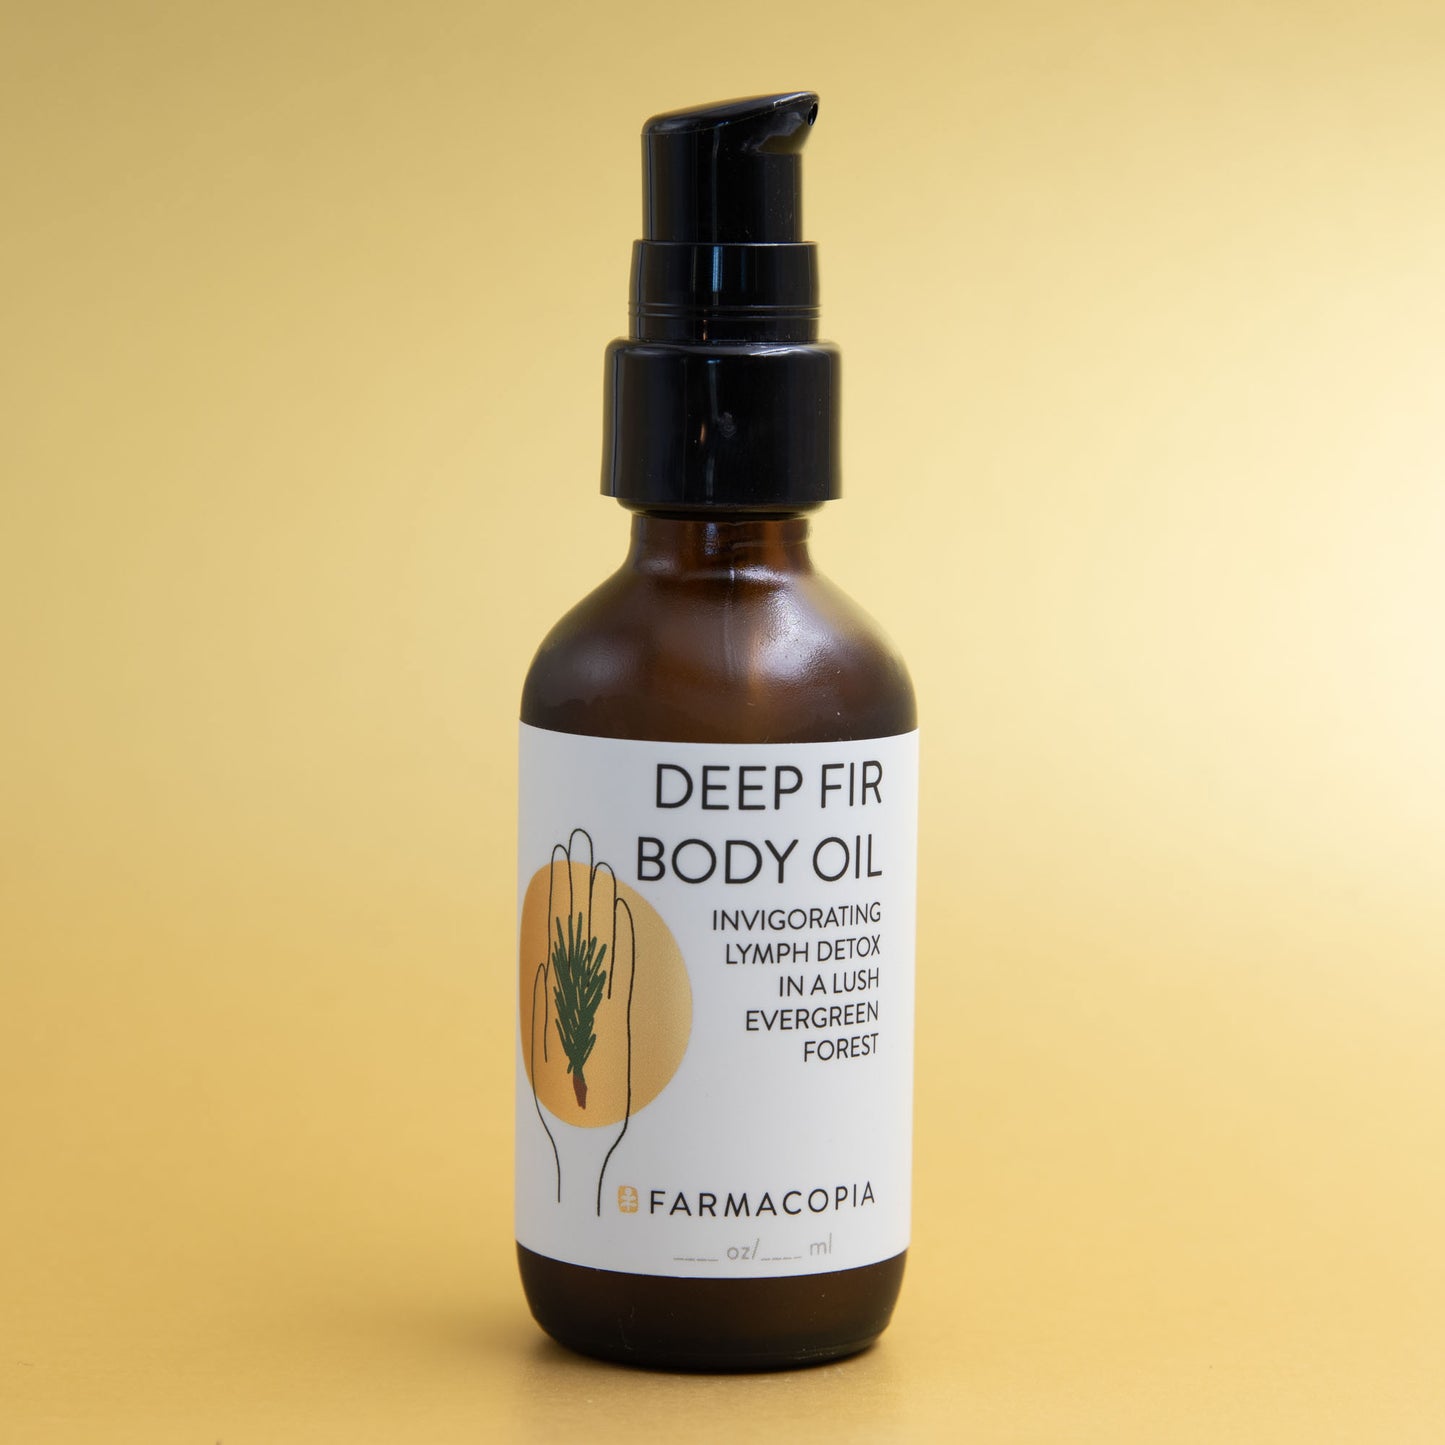 Deep Fir Body Oil